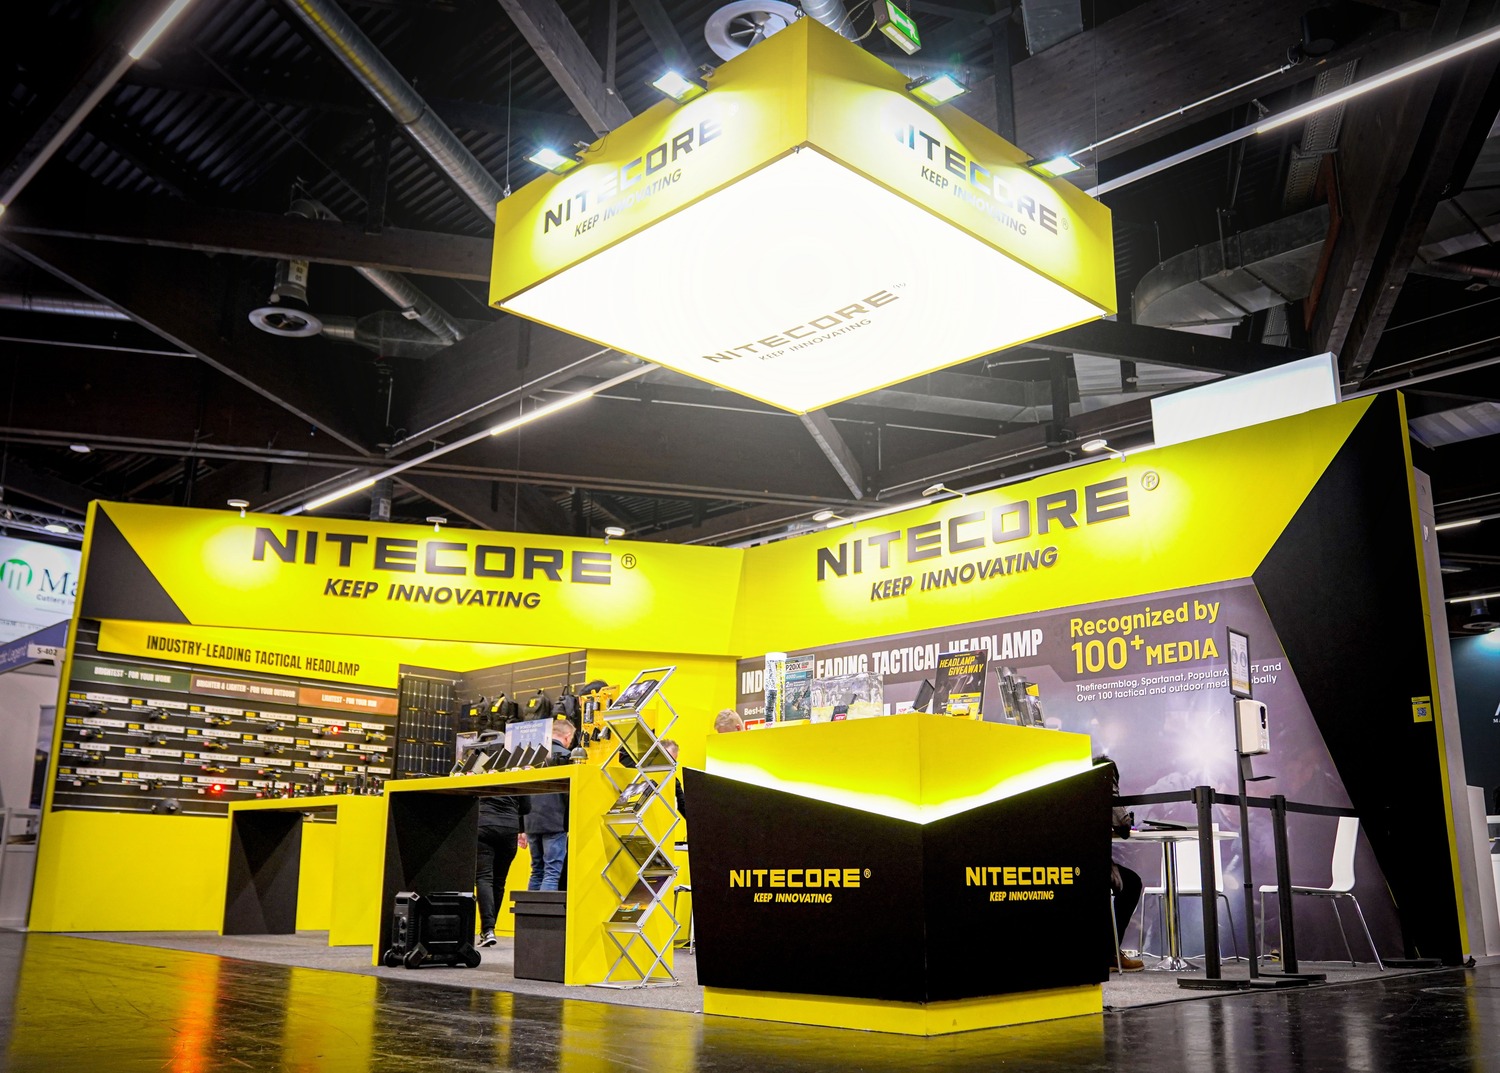 Màu sắc chủ đạo của Nitecore trên sản phẩm và bộ nhận diện thương hiệu là đen và vàng